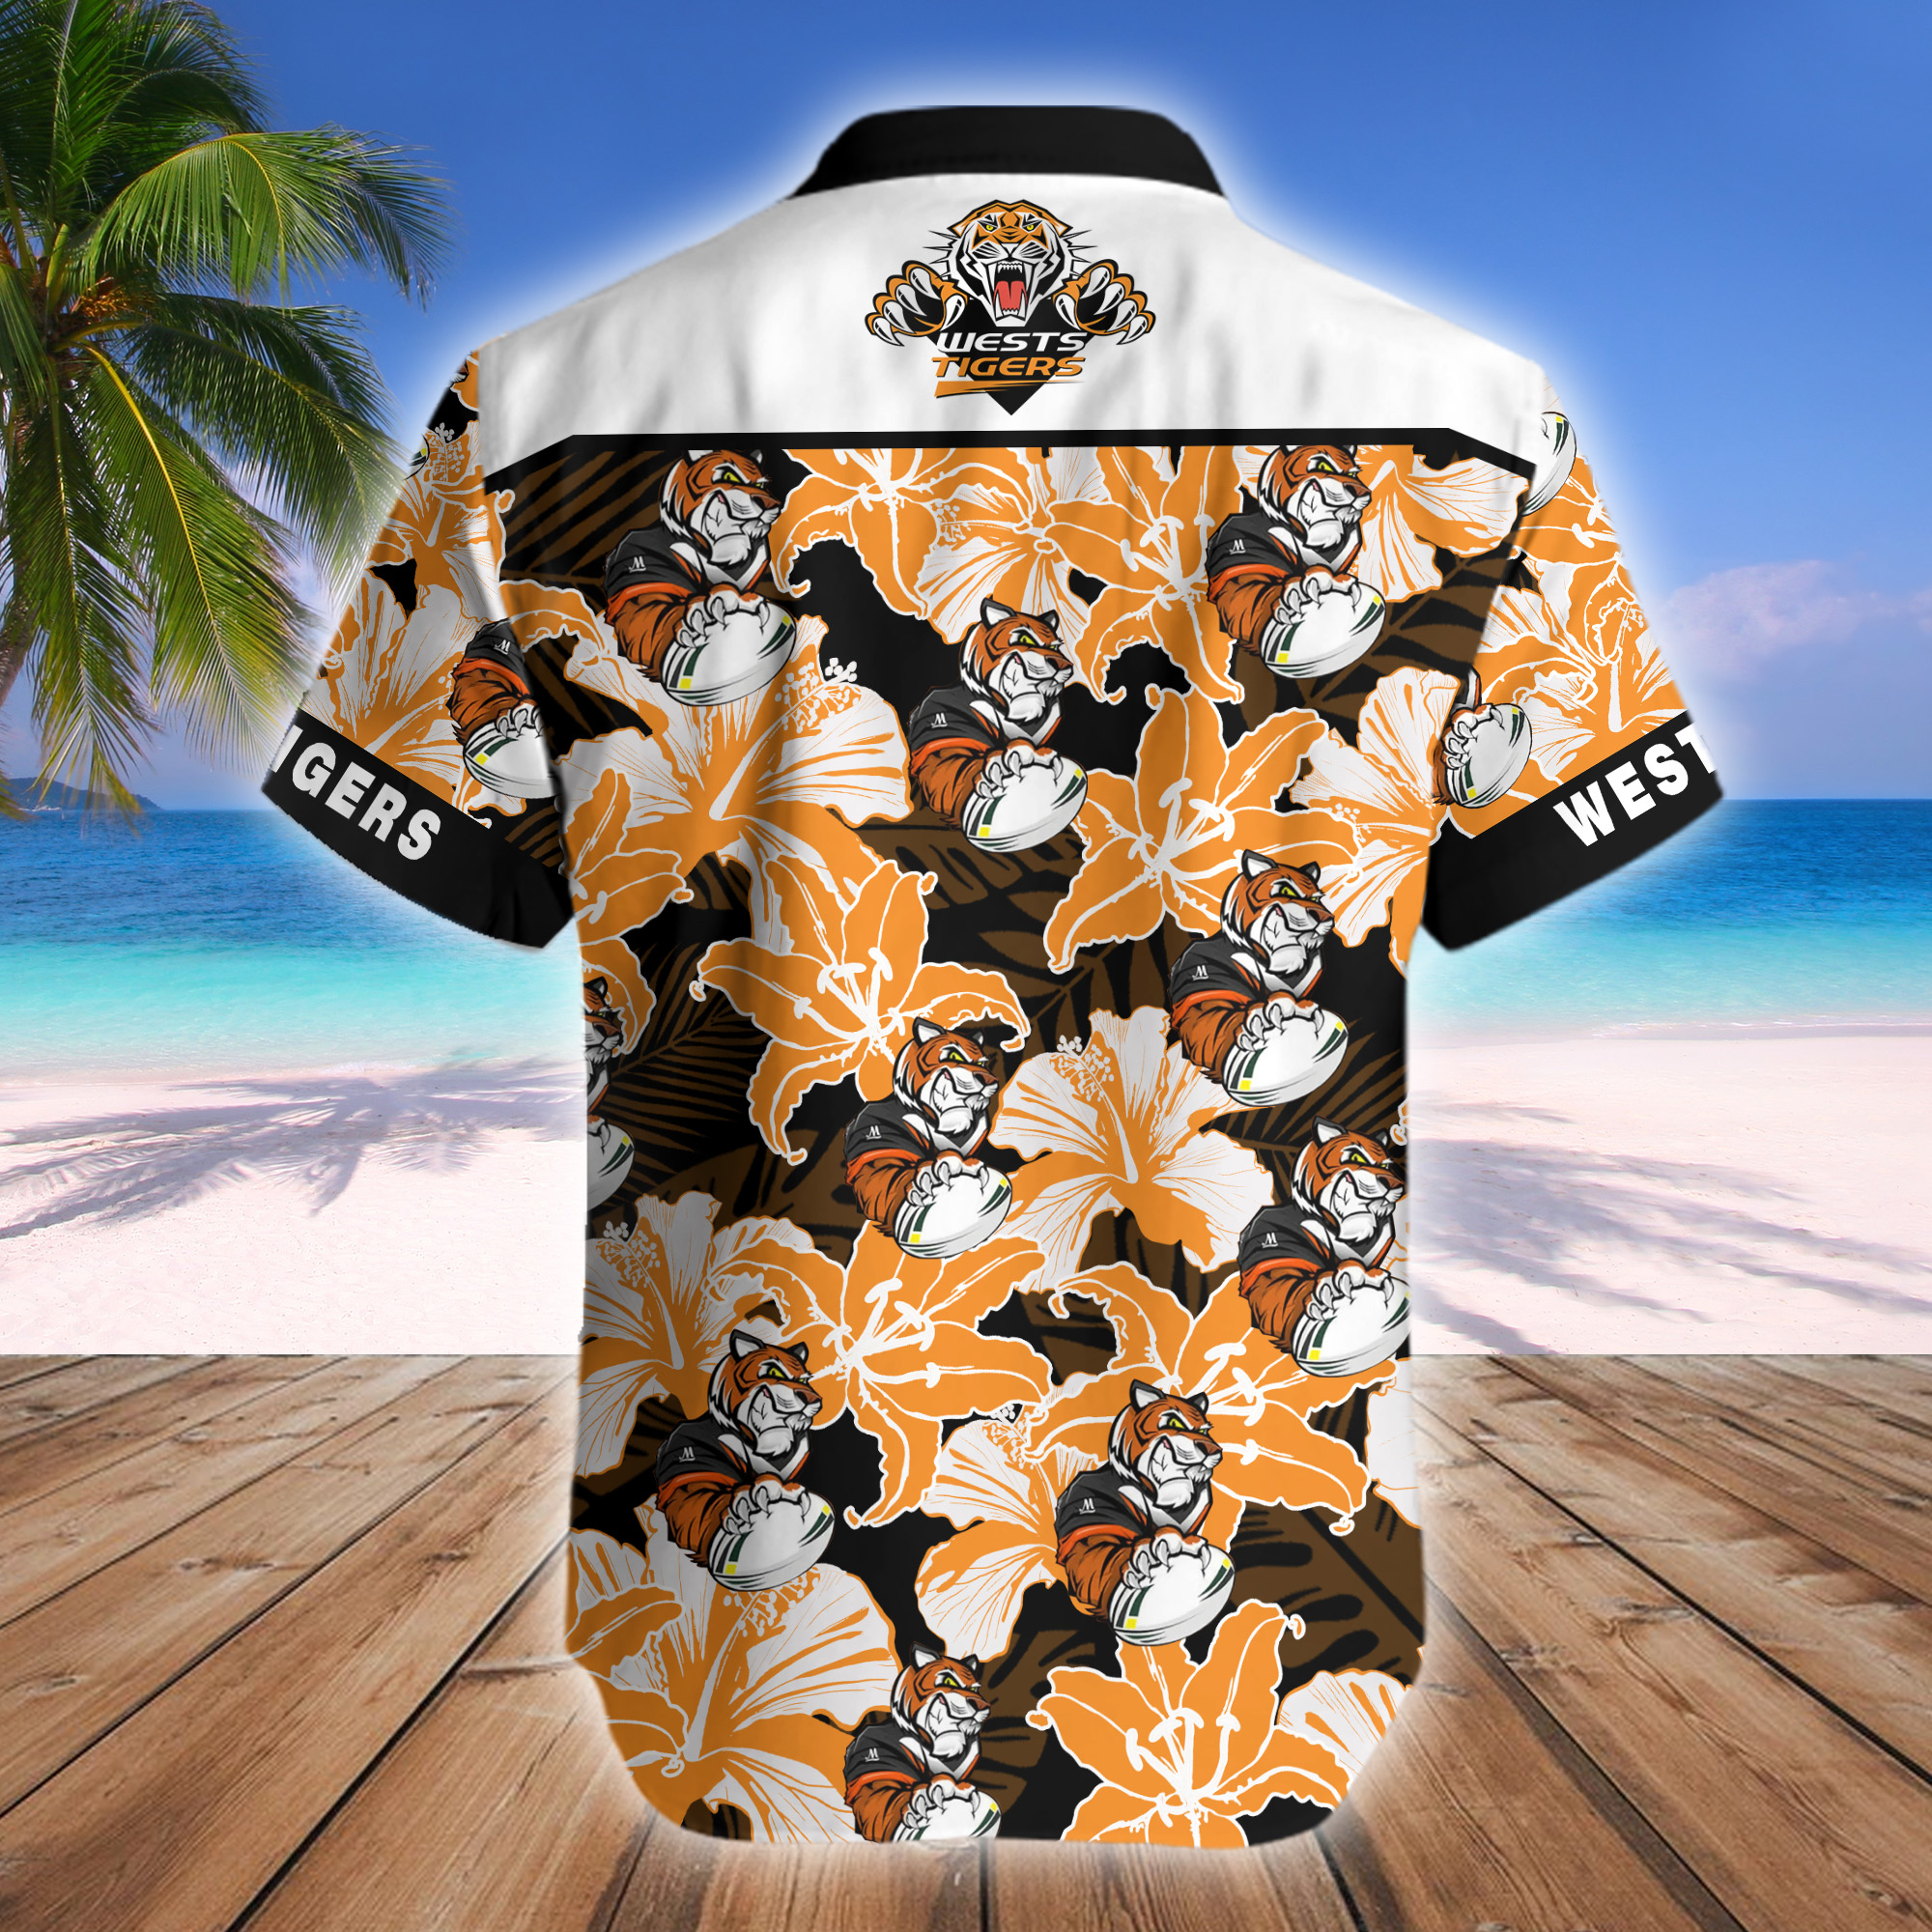 Wests Tigers NRL Mascot Hawaiian Shirt